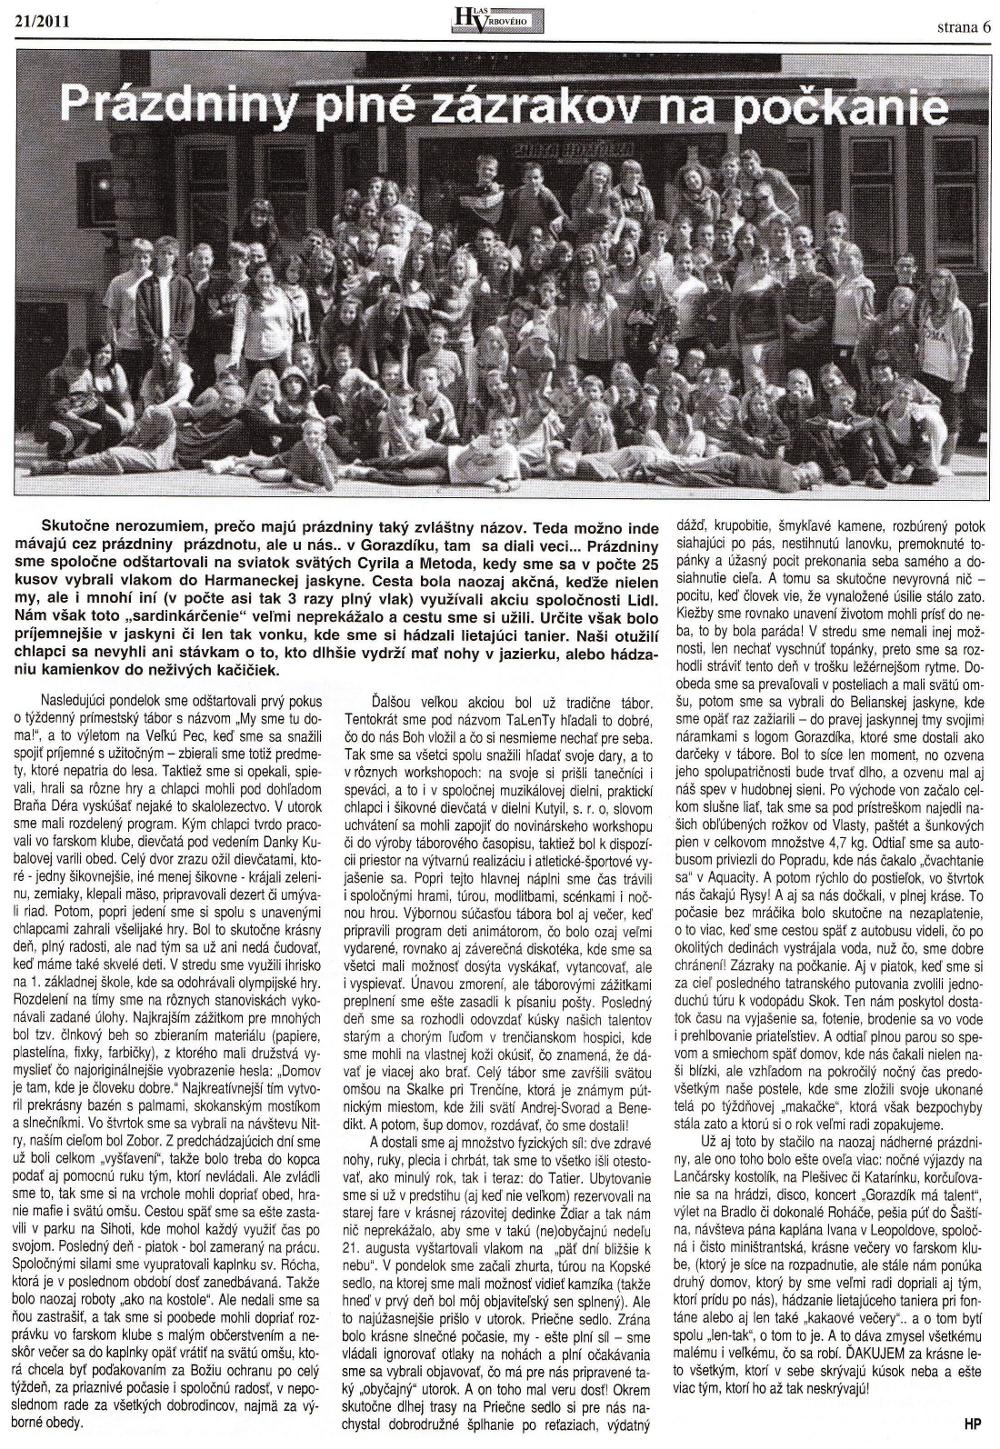 Hlas Vrbového 21/2011, strana 6